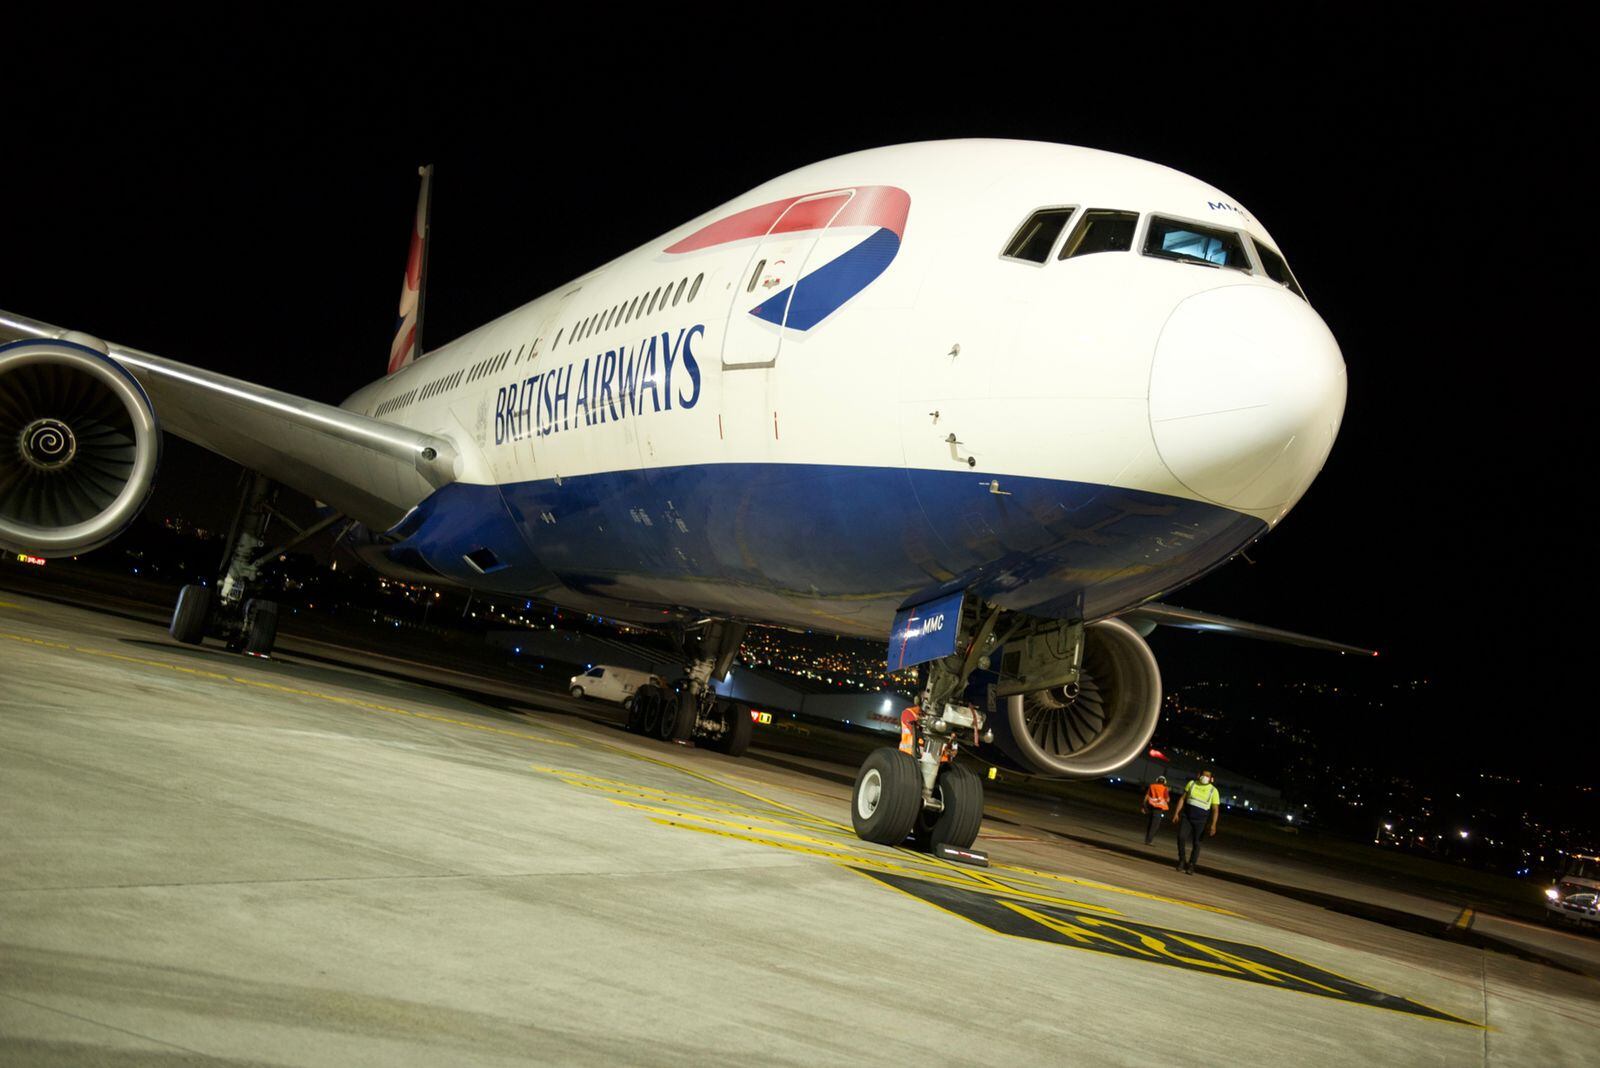 British Airways ofrecerá tres vuelos directos semanales entre Londres y Costa Rica en Boeing 777-200. El servicio será los martes, jueves y sábados. Foto: